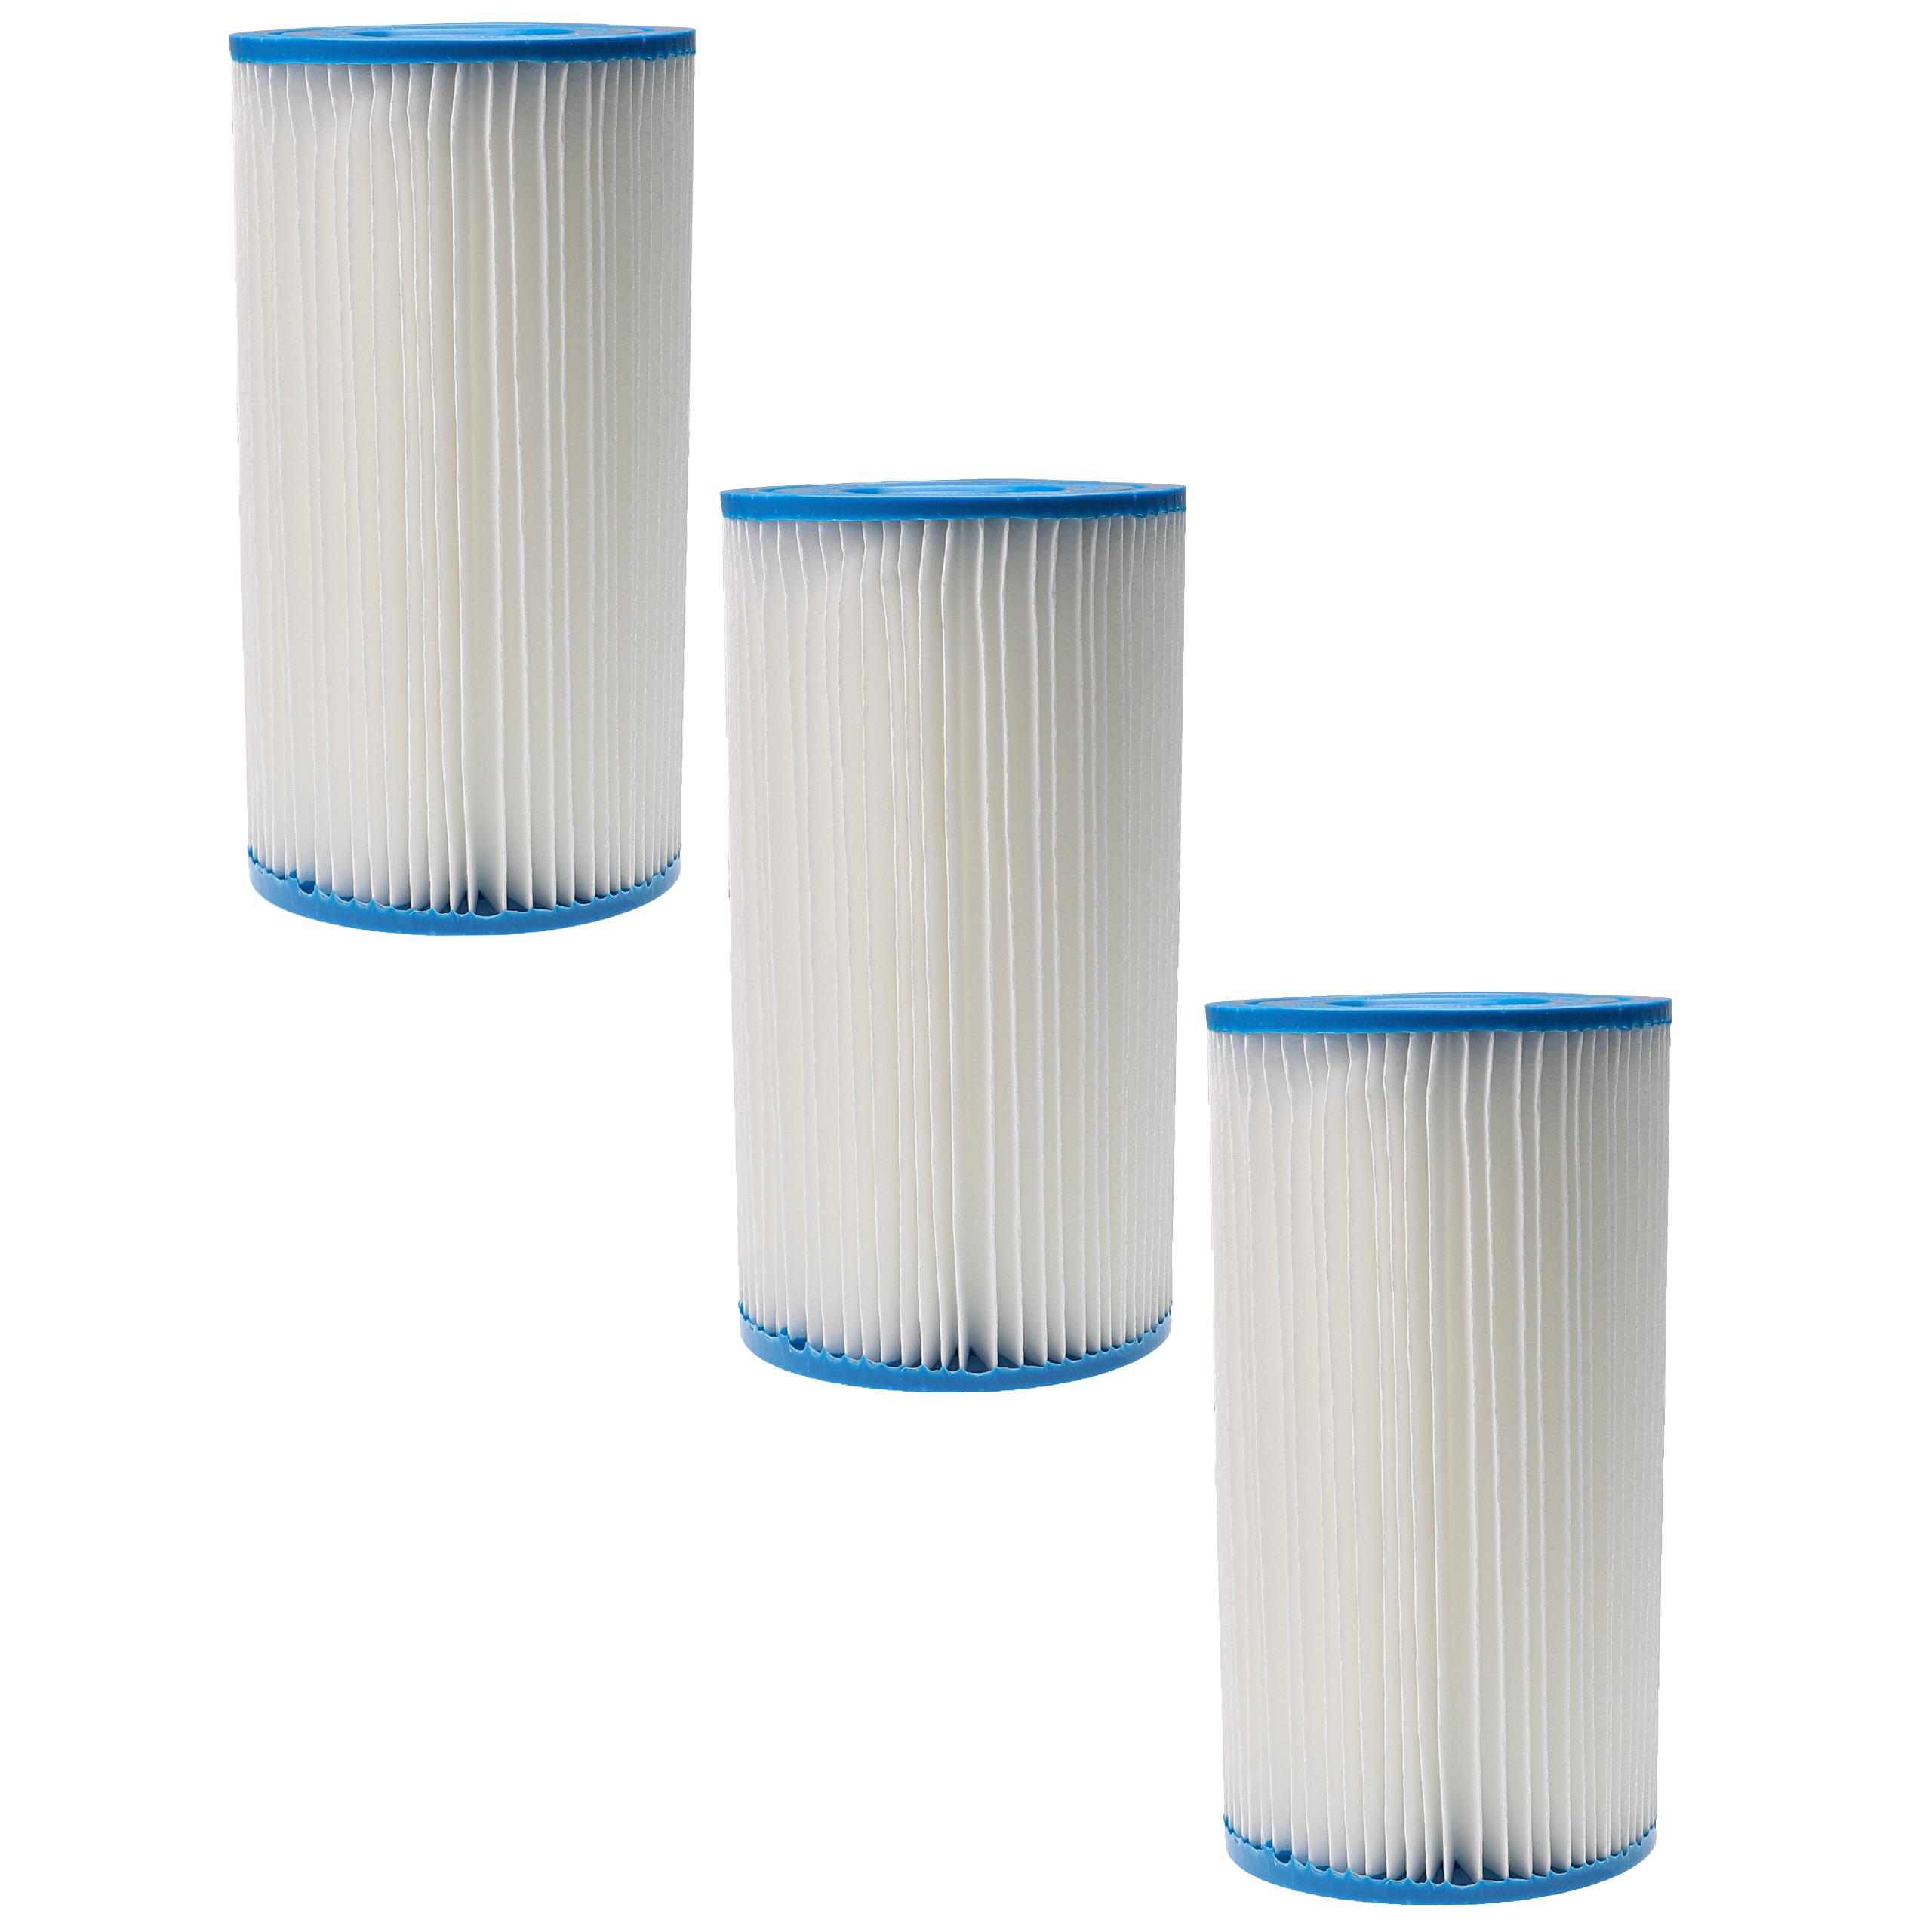 3x Filtro dell'acqua sostituisce Intex filtro tipo A per piscina, pompa filtro - cartuccia filtrante